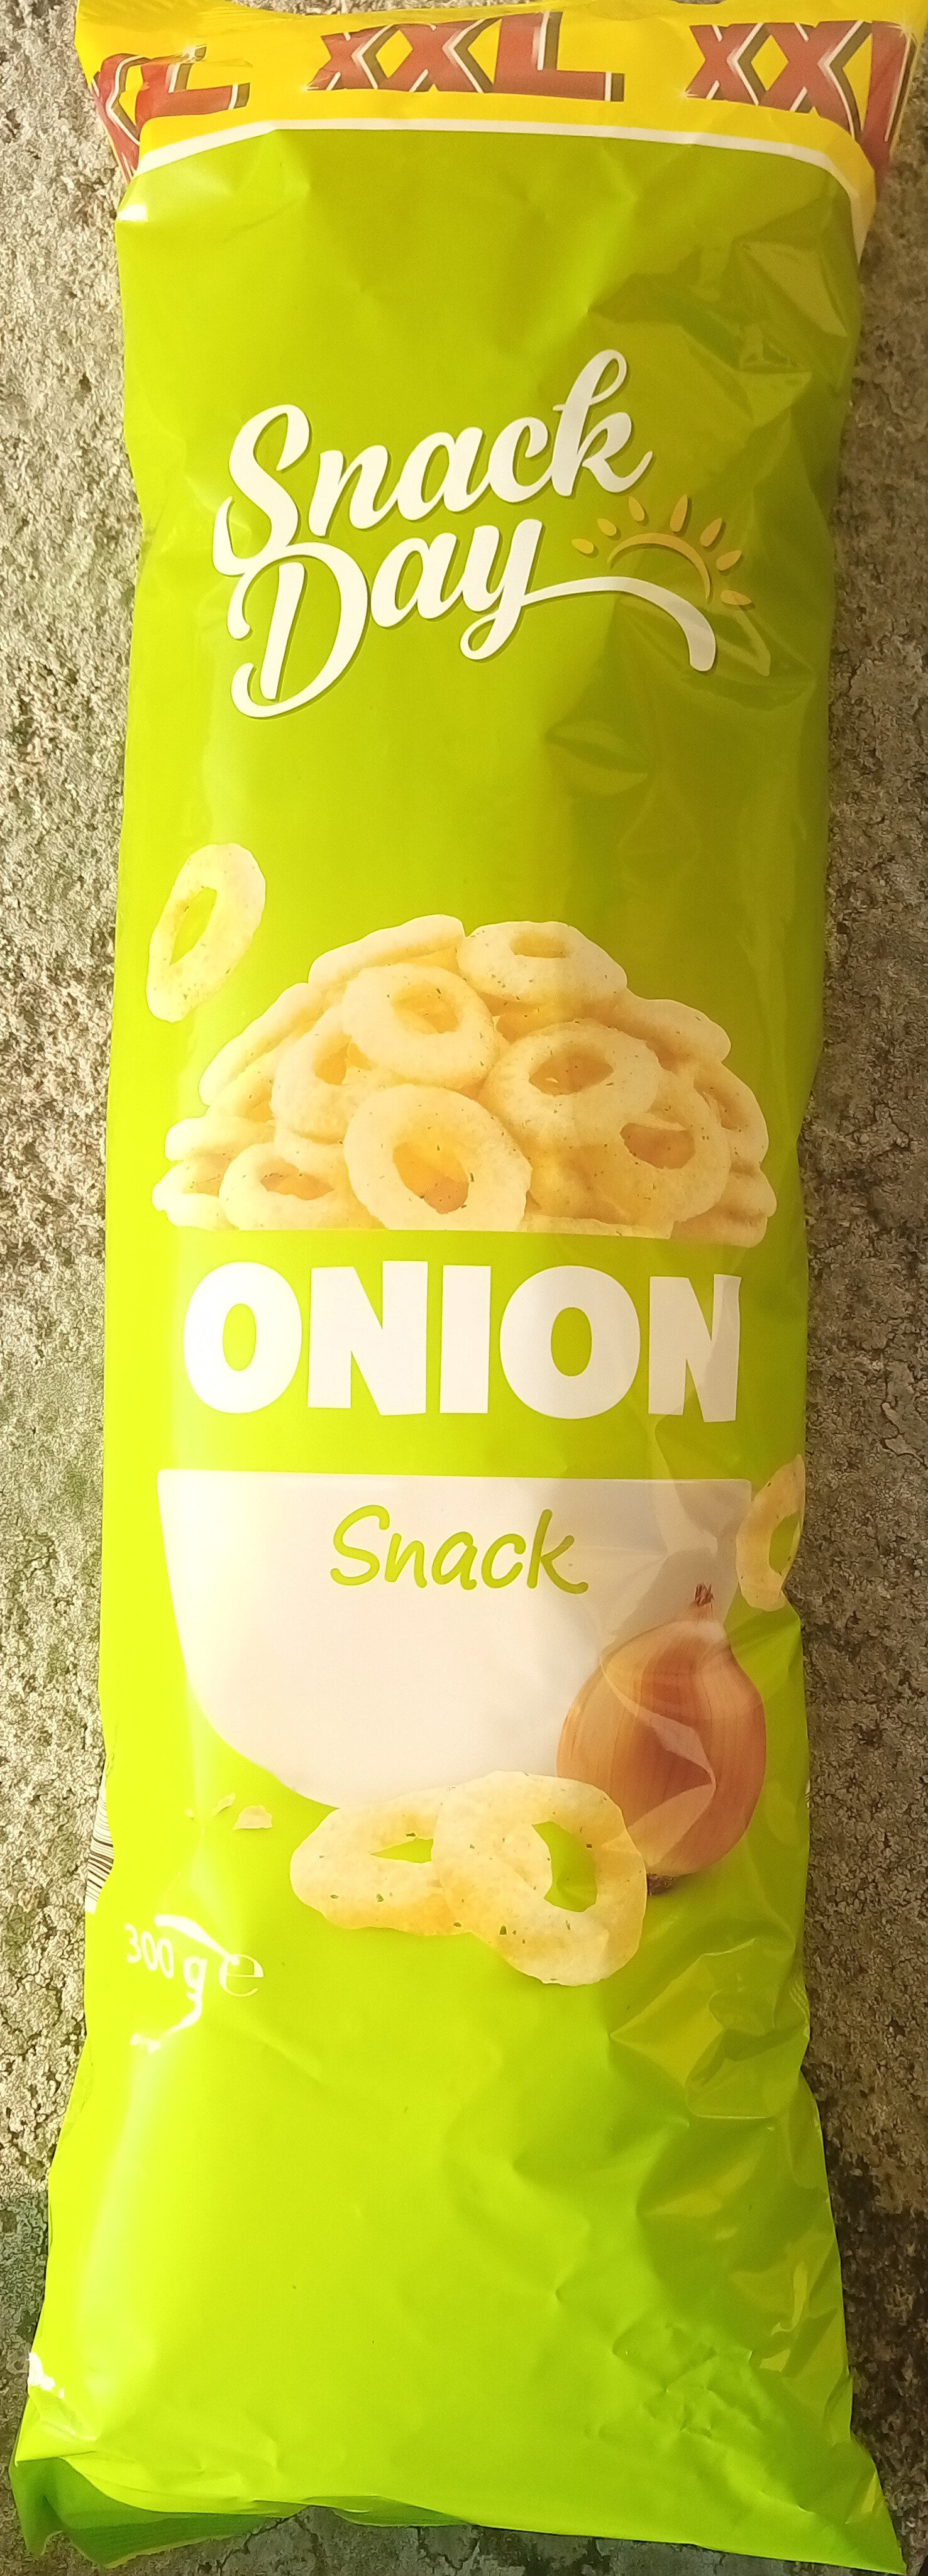 Snack Day Onion Snack XXL - Produkt - sv